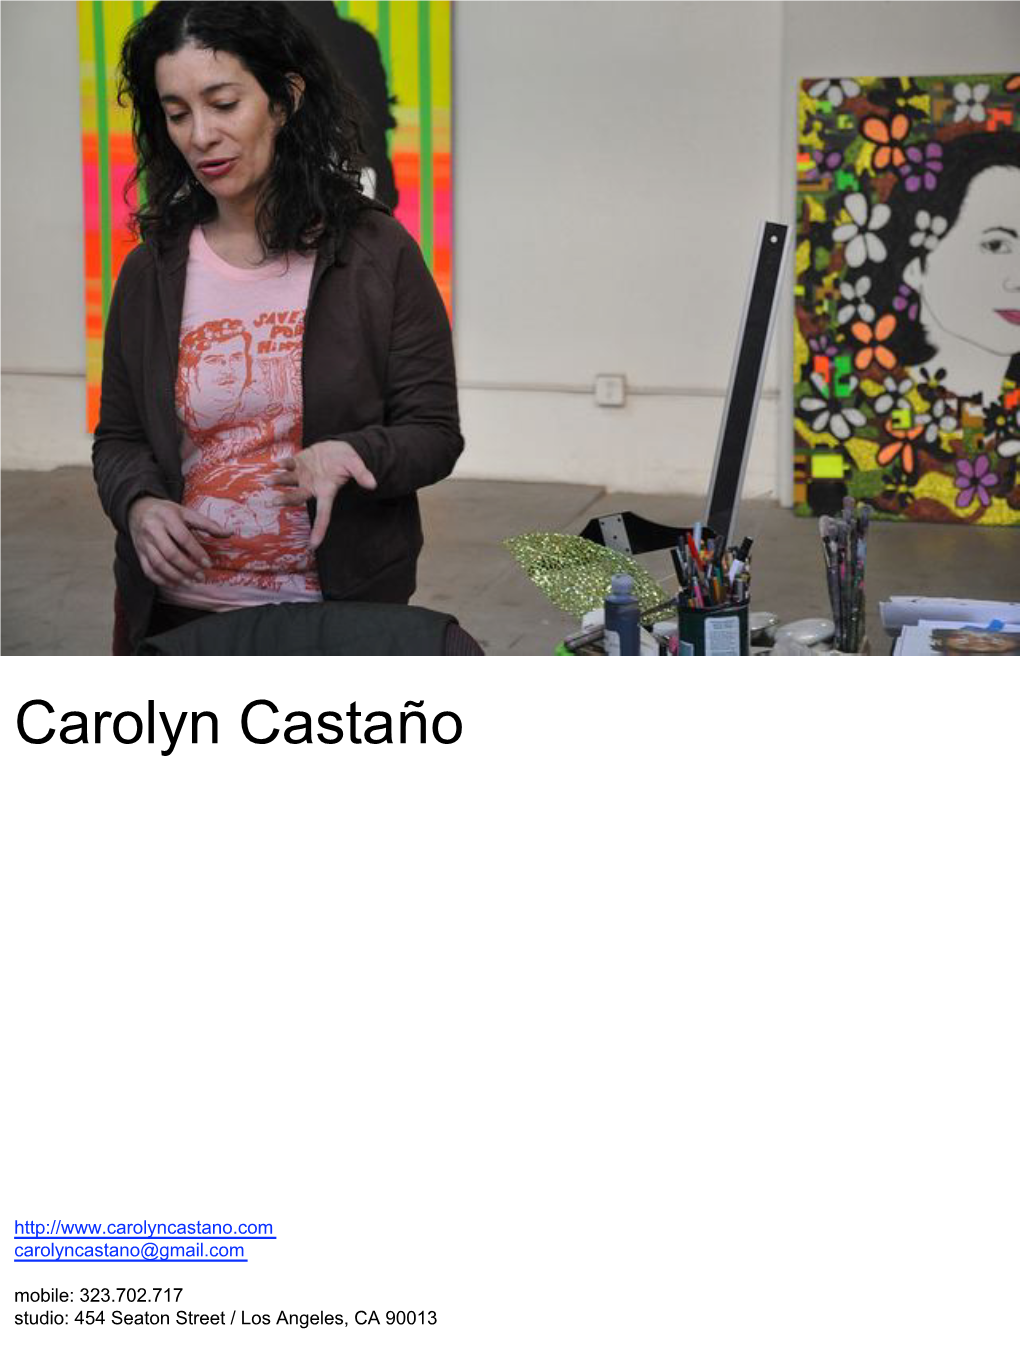 Carolyn Castaño